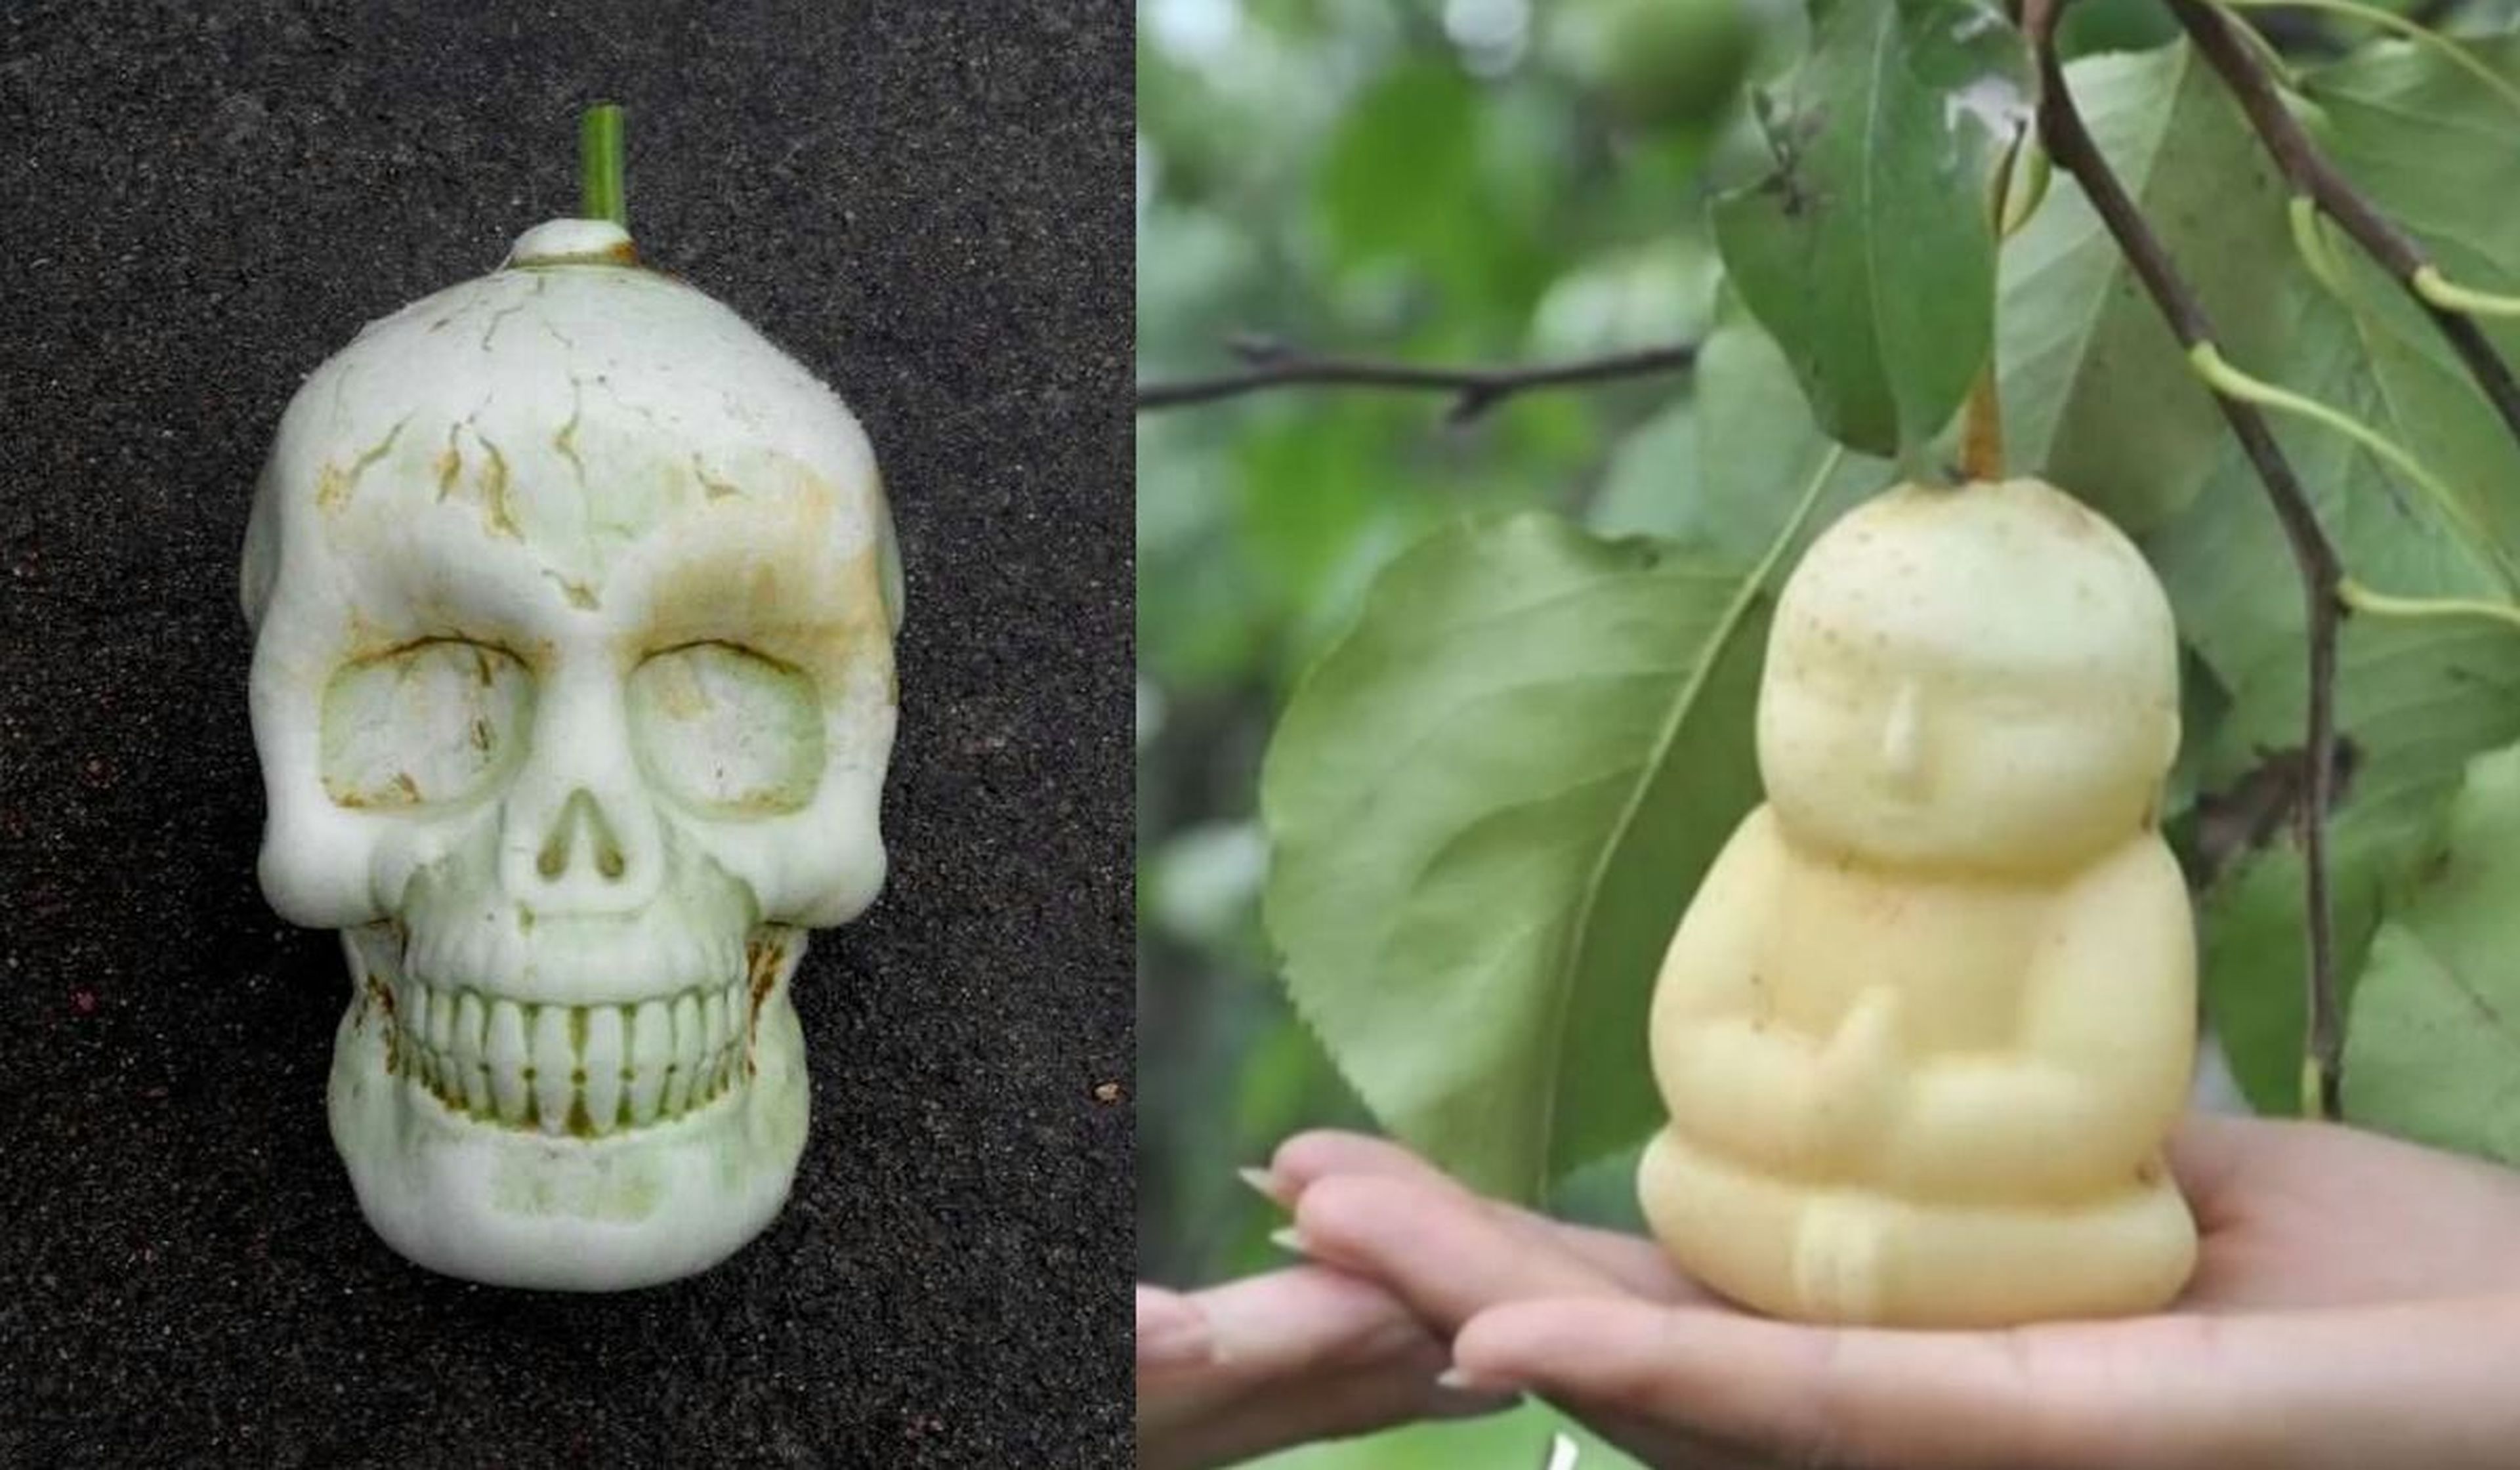 Frutas con formas humanas y manzanas cuadradas, así se consiguen